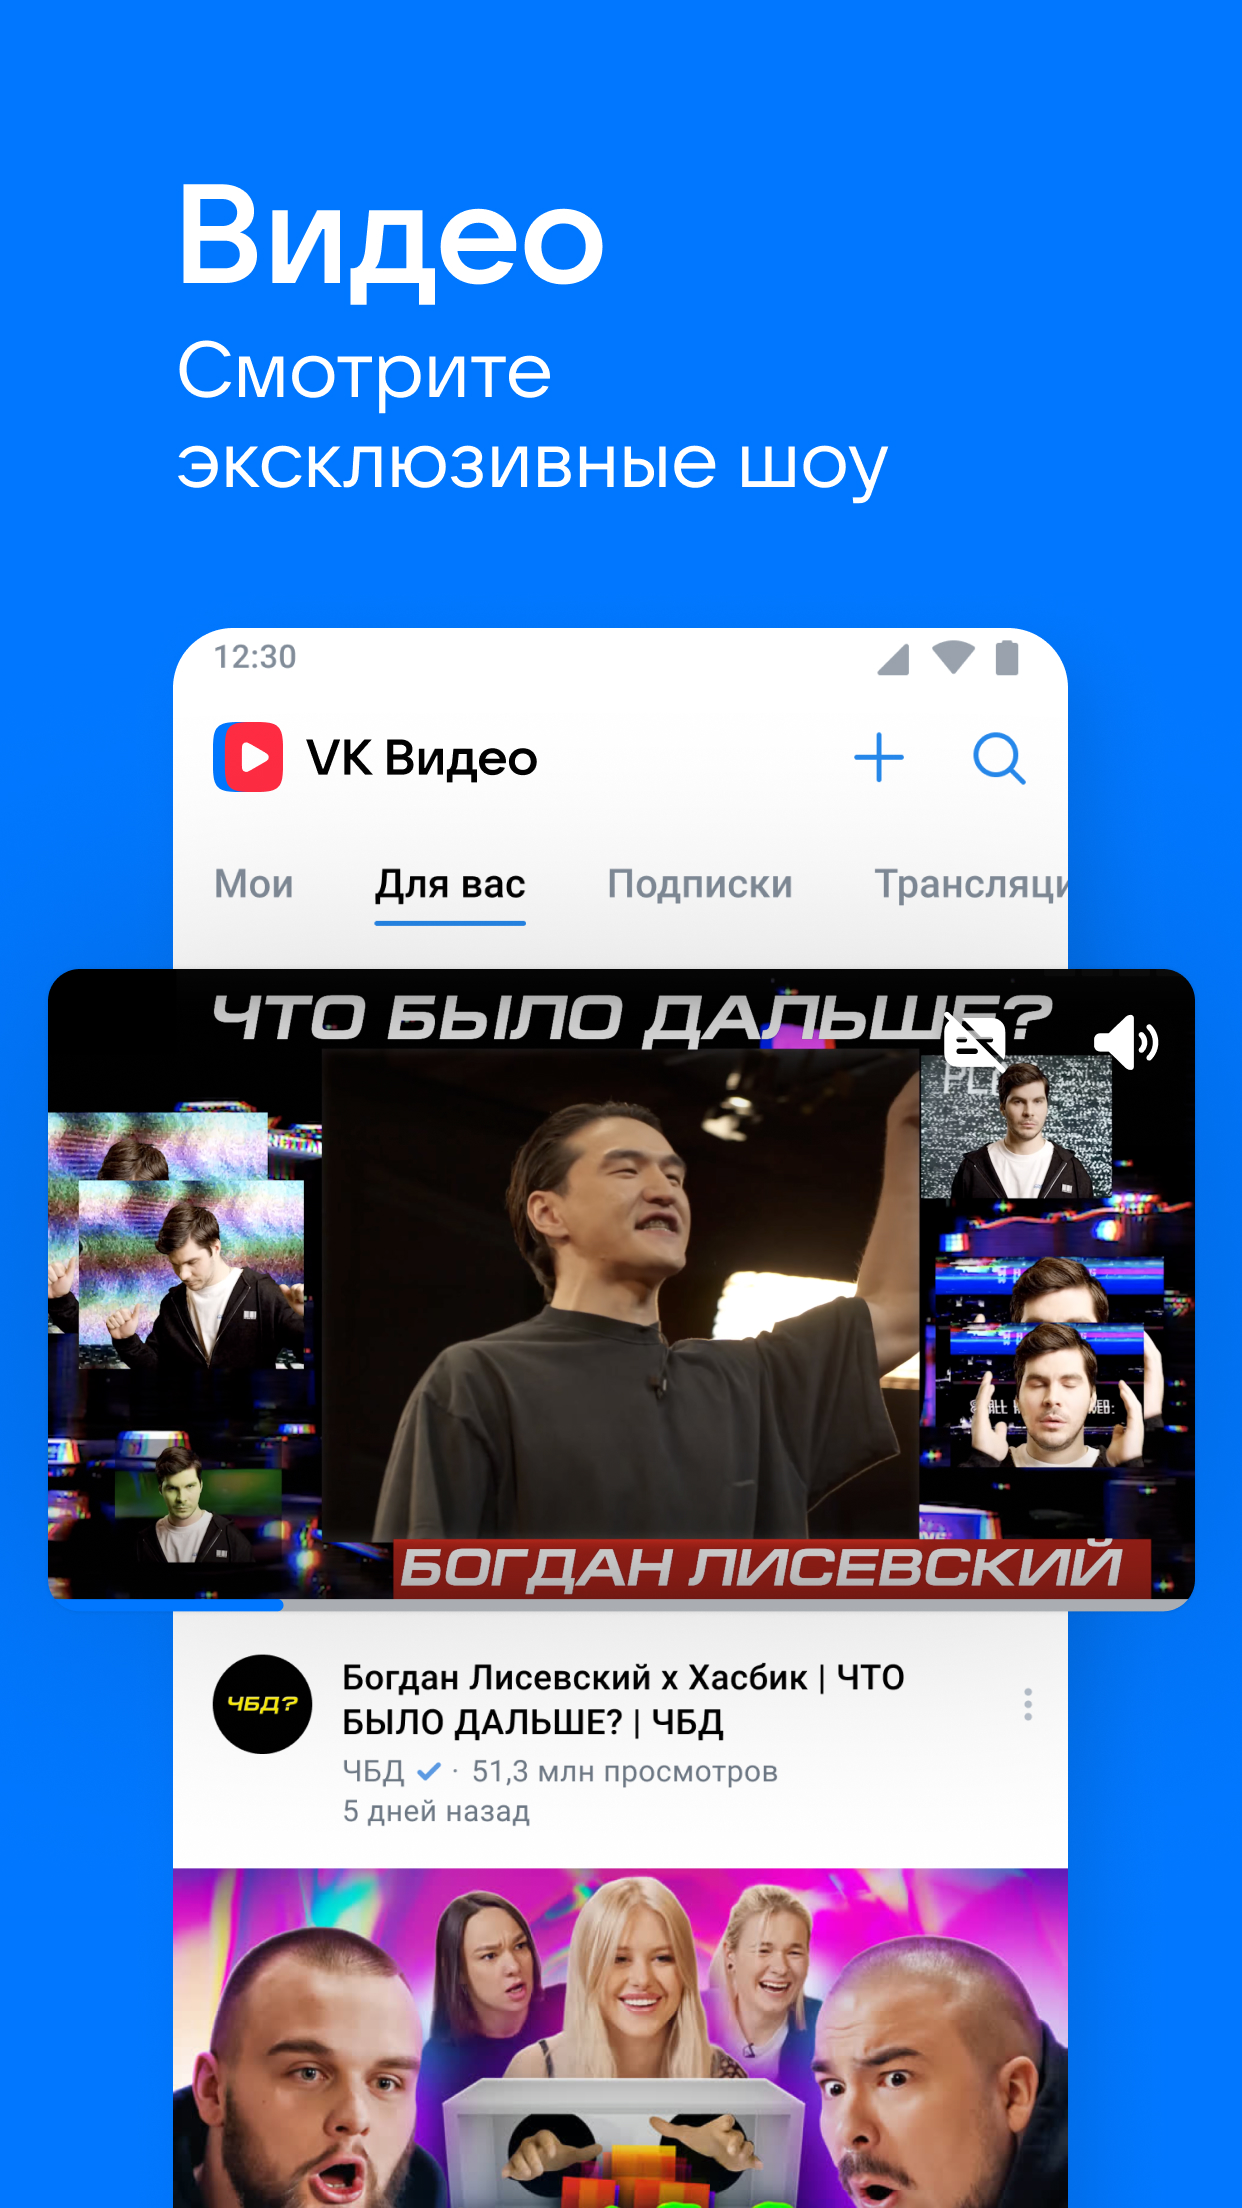 ВКонтакте: Музыка, Видео, Чаты – Скачать Приложение Для Android.